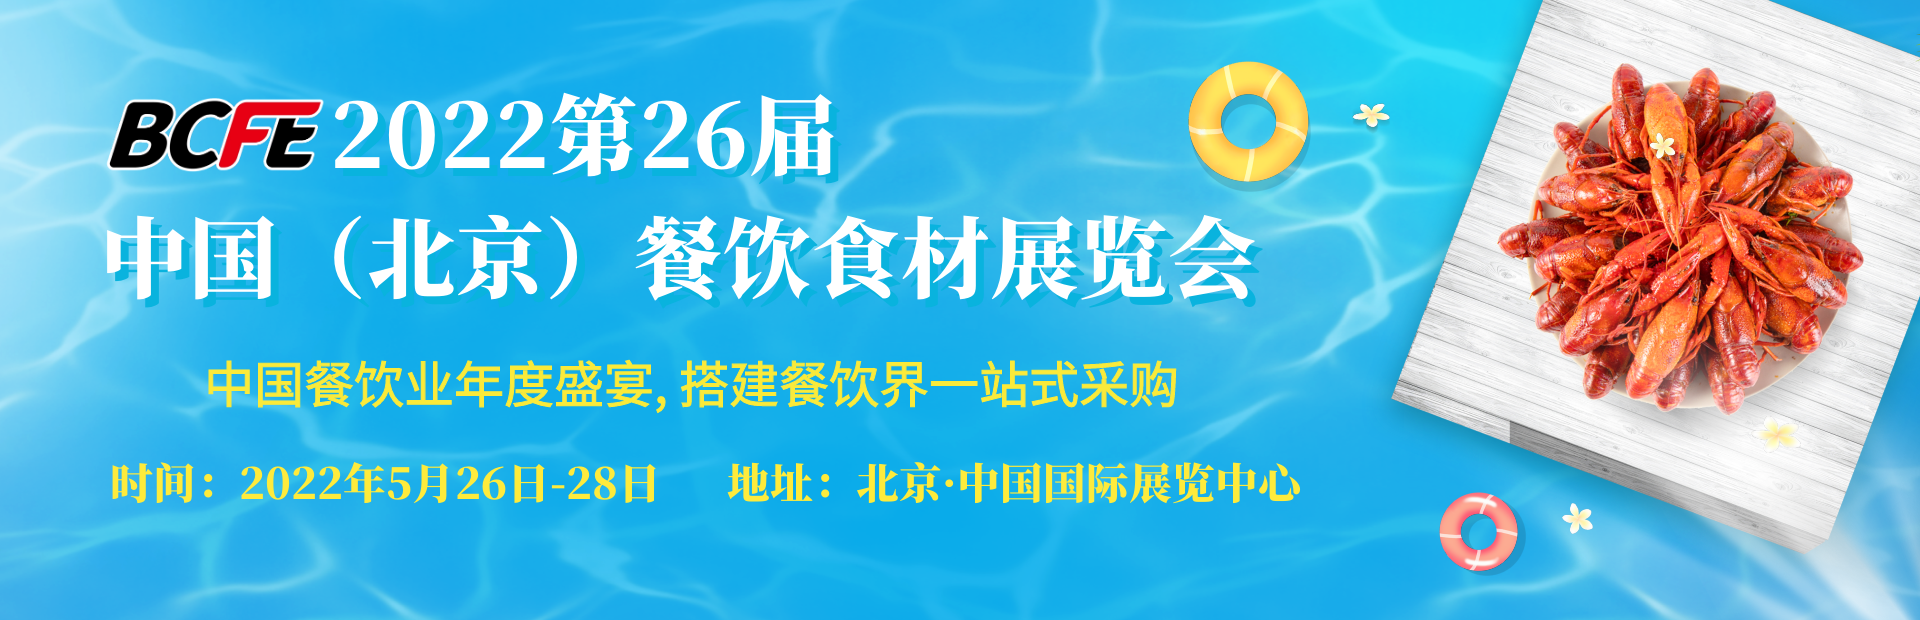 2022中国(北京)餐饮火锅食材及速冻食品展览会